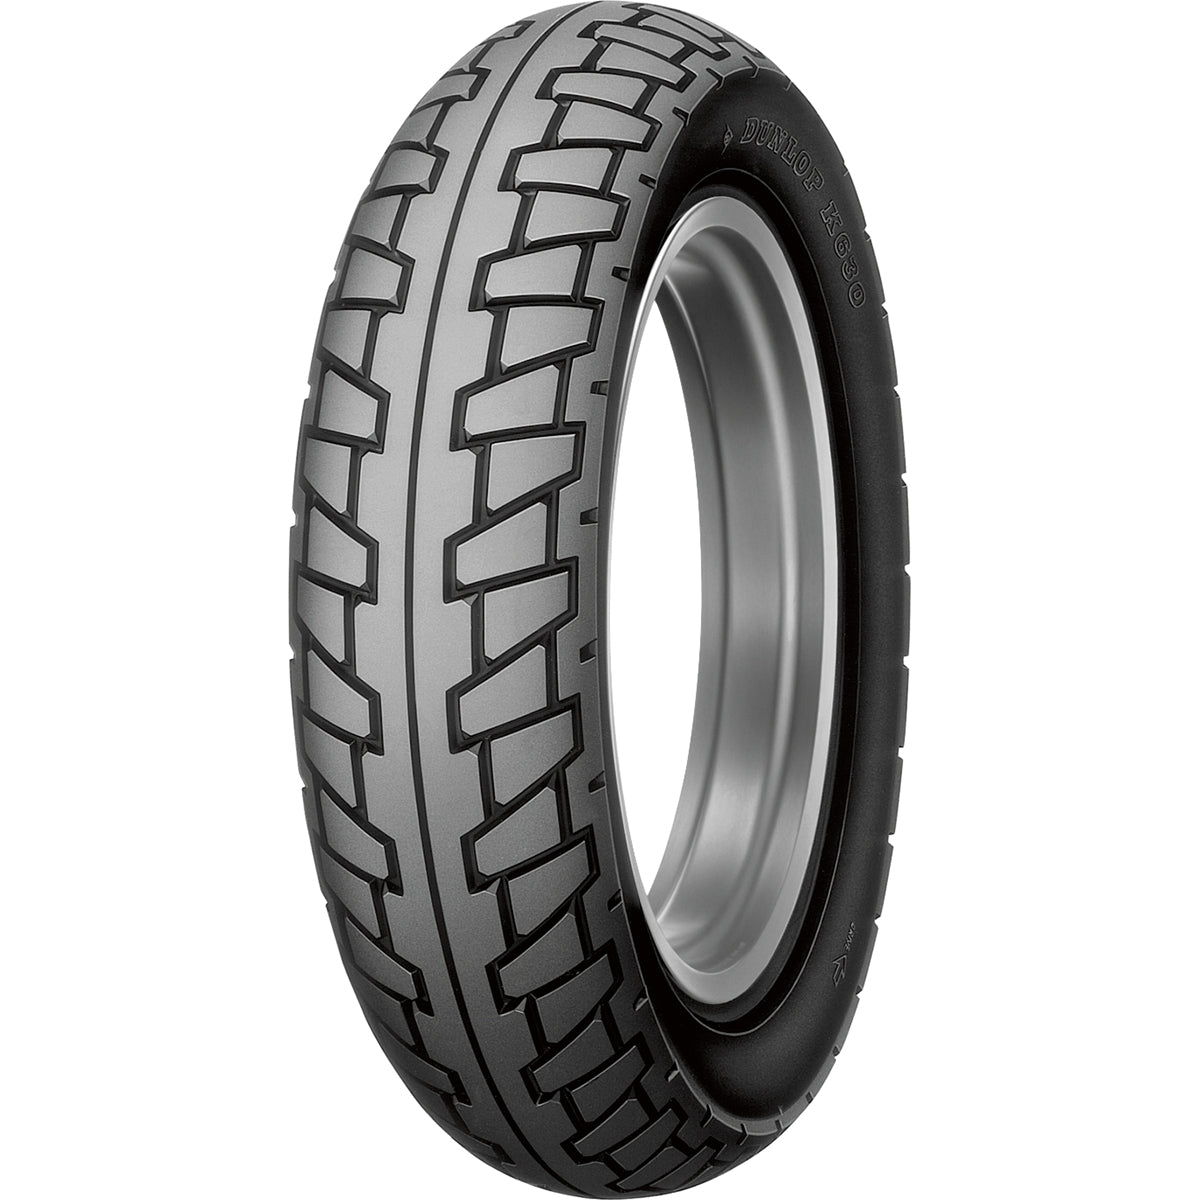 Dunlop K630 OE 16" Rear Street Tires-32PU